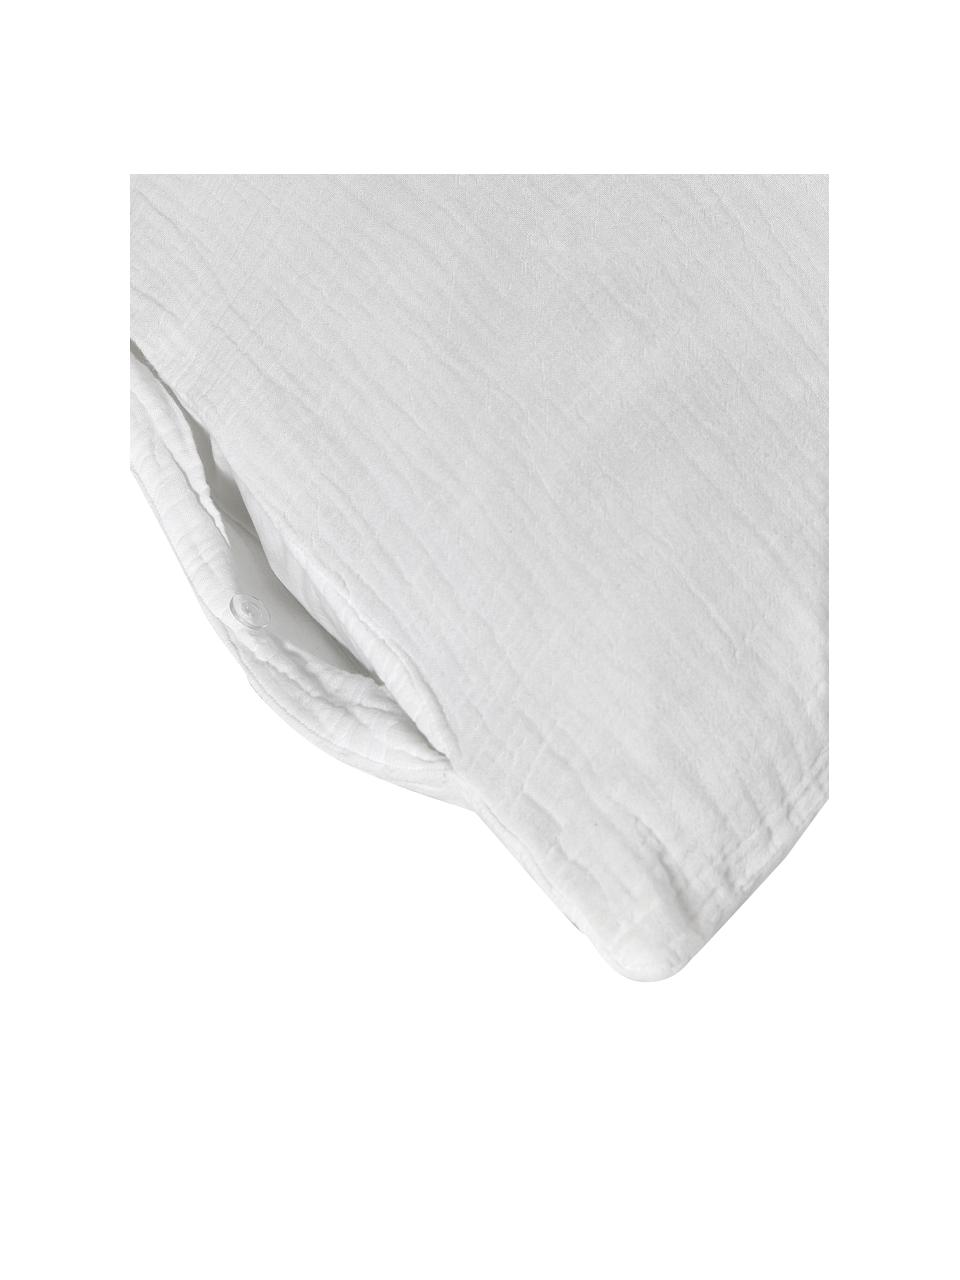 Housse de couette 240x220 mousseline de coton blanc Odile, Blanc, 135 x 200 cm